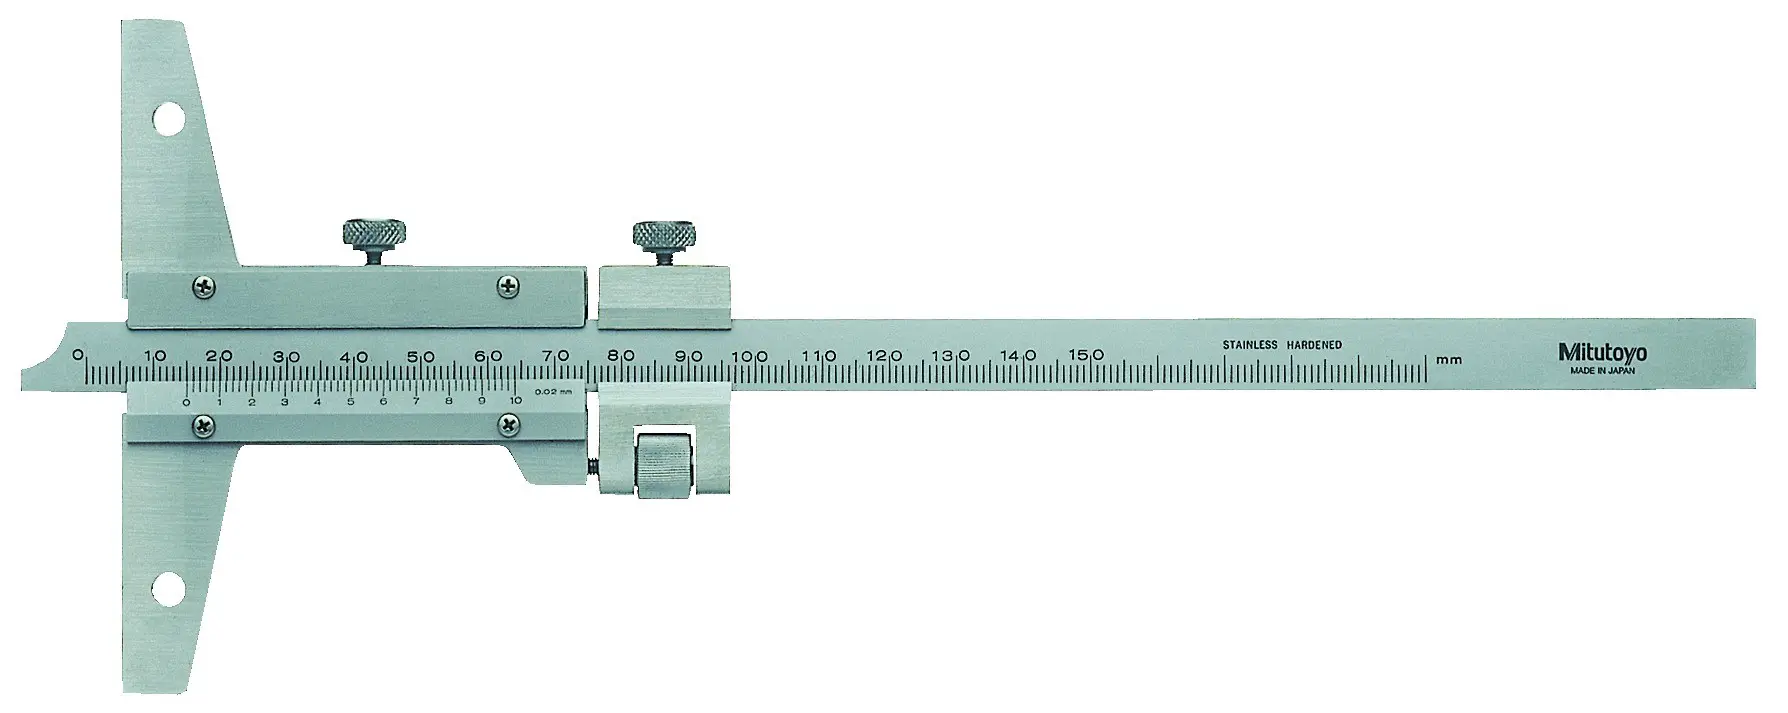 Linear Measurement